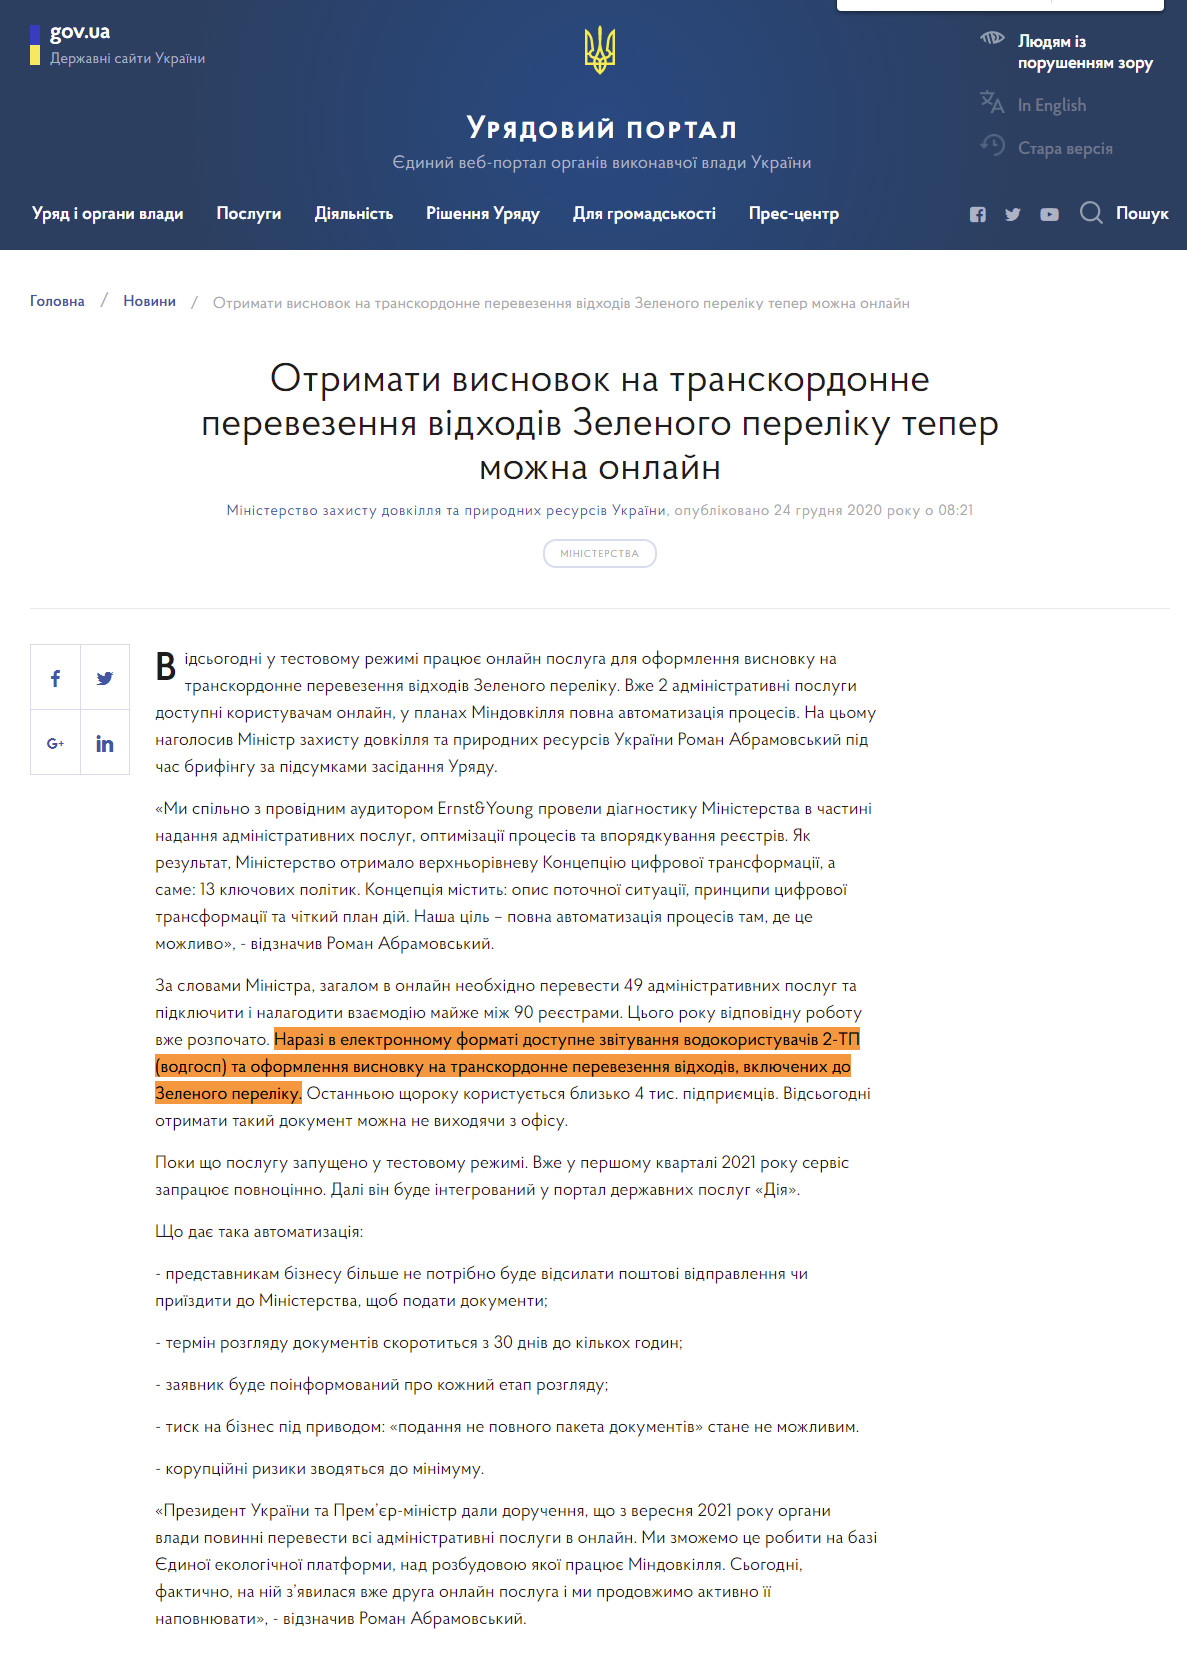 https://www.kmu.gov.ua/news/otrimati-visnovok-na-transkordonne-perevezennya-vidhodiv-zelenogo-pereliku-teper-mozhna-onlajn